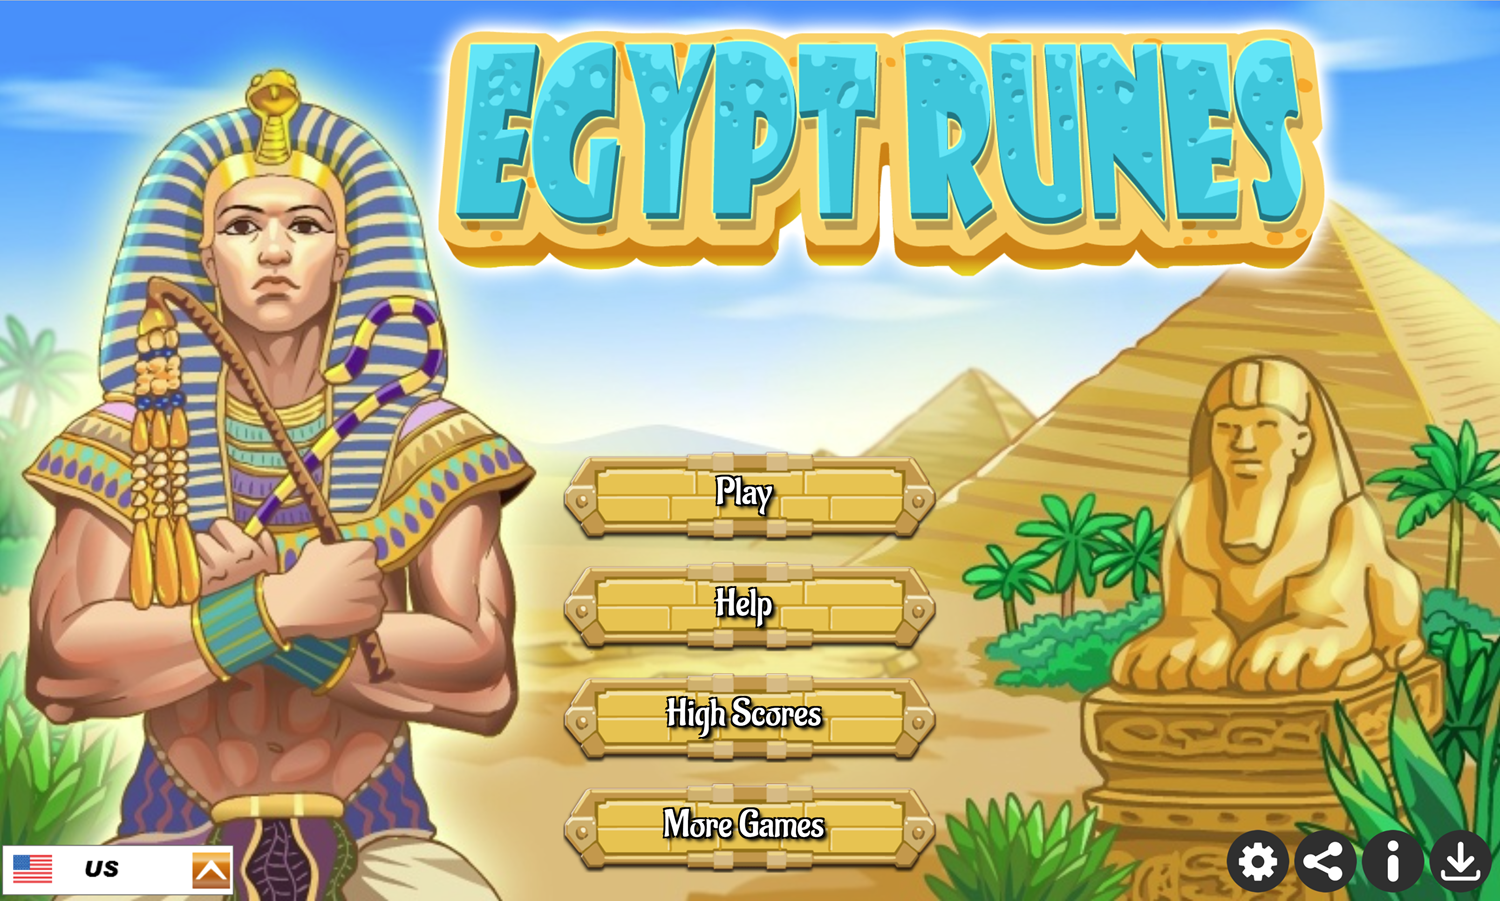 Egypt Runes Game Welcome Screen Screenshot.